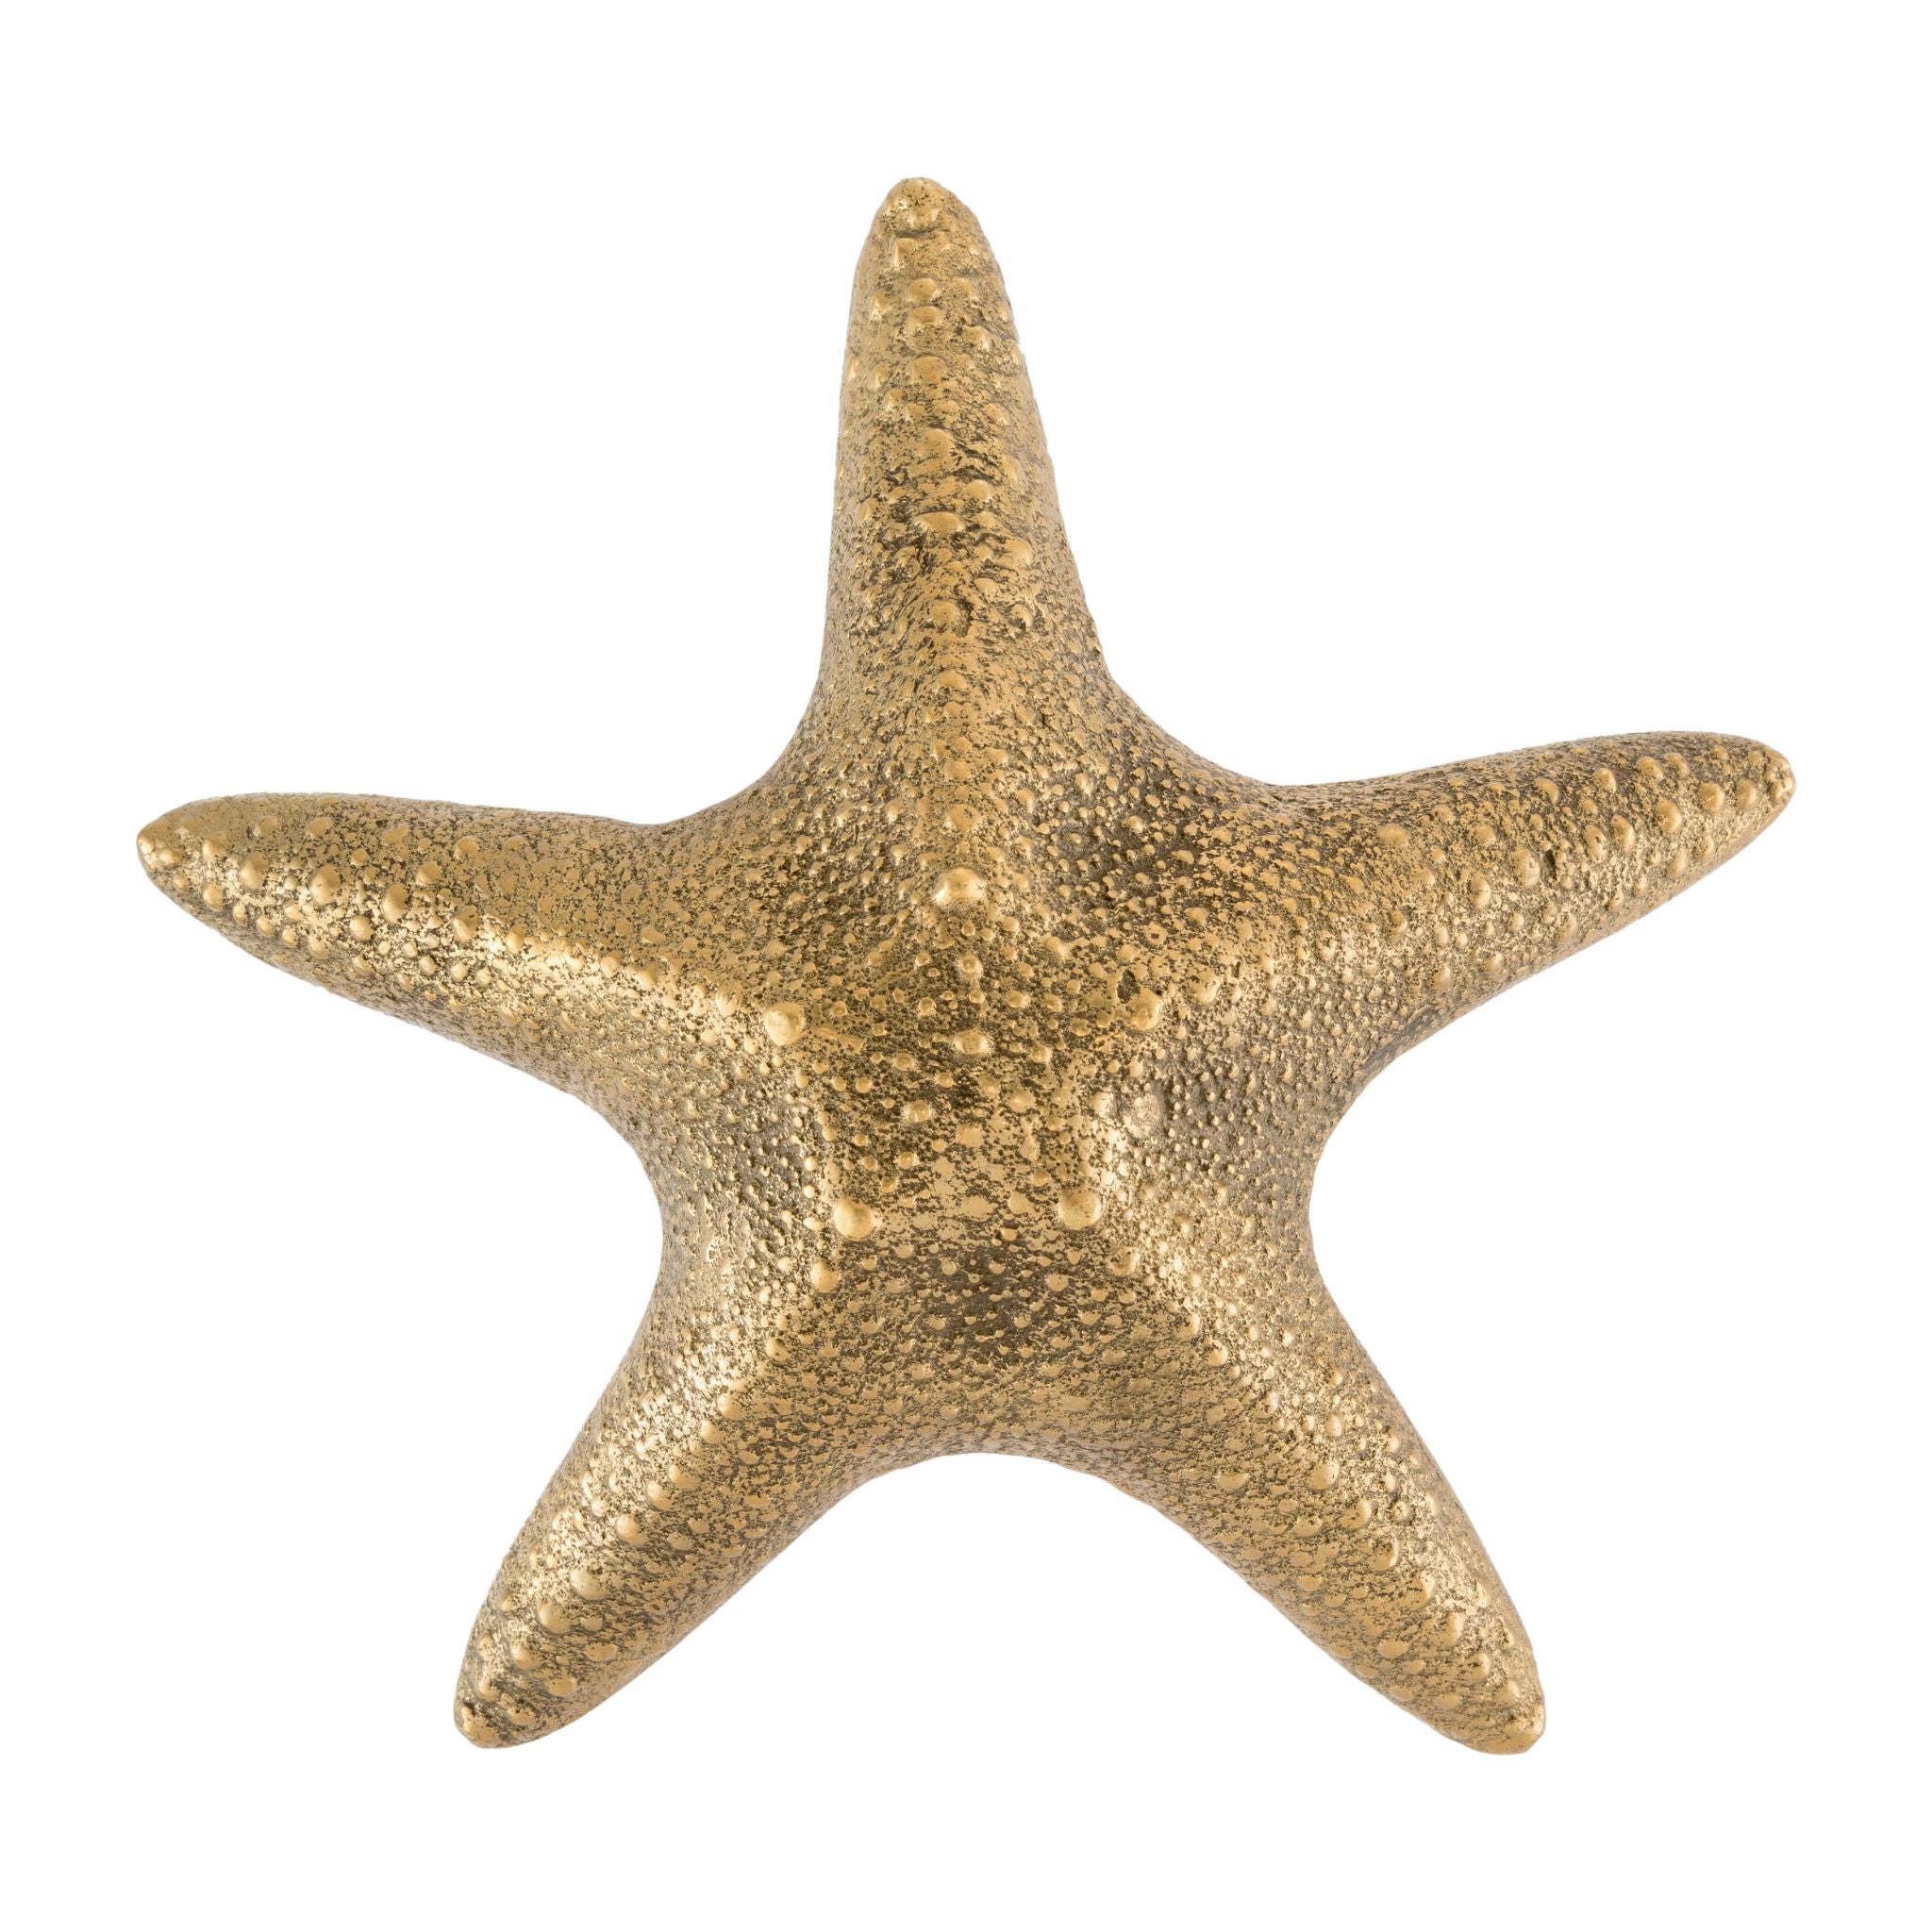 Primo piano di un pomello in ottone di medie dimensioni a forma di stella marina, caratterizzato da dettagli intricati e da una finitura lucida, adatto ad aggiungere fascino costiero ad armadi, cassetti e porte.